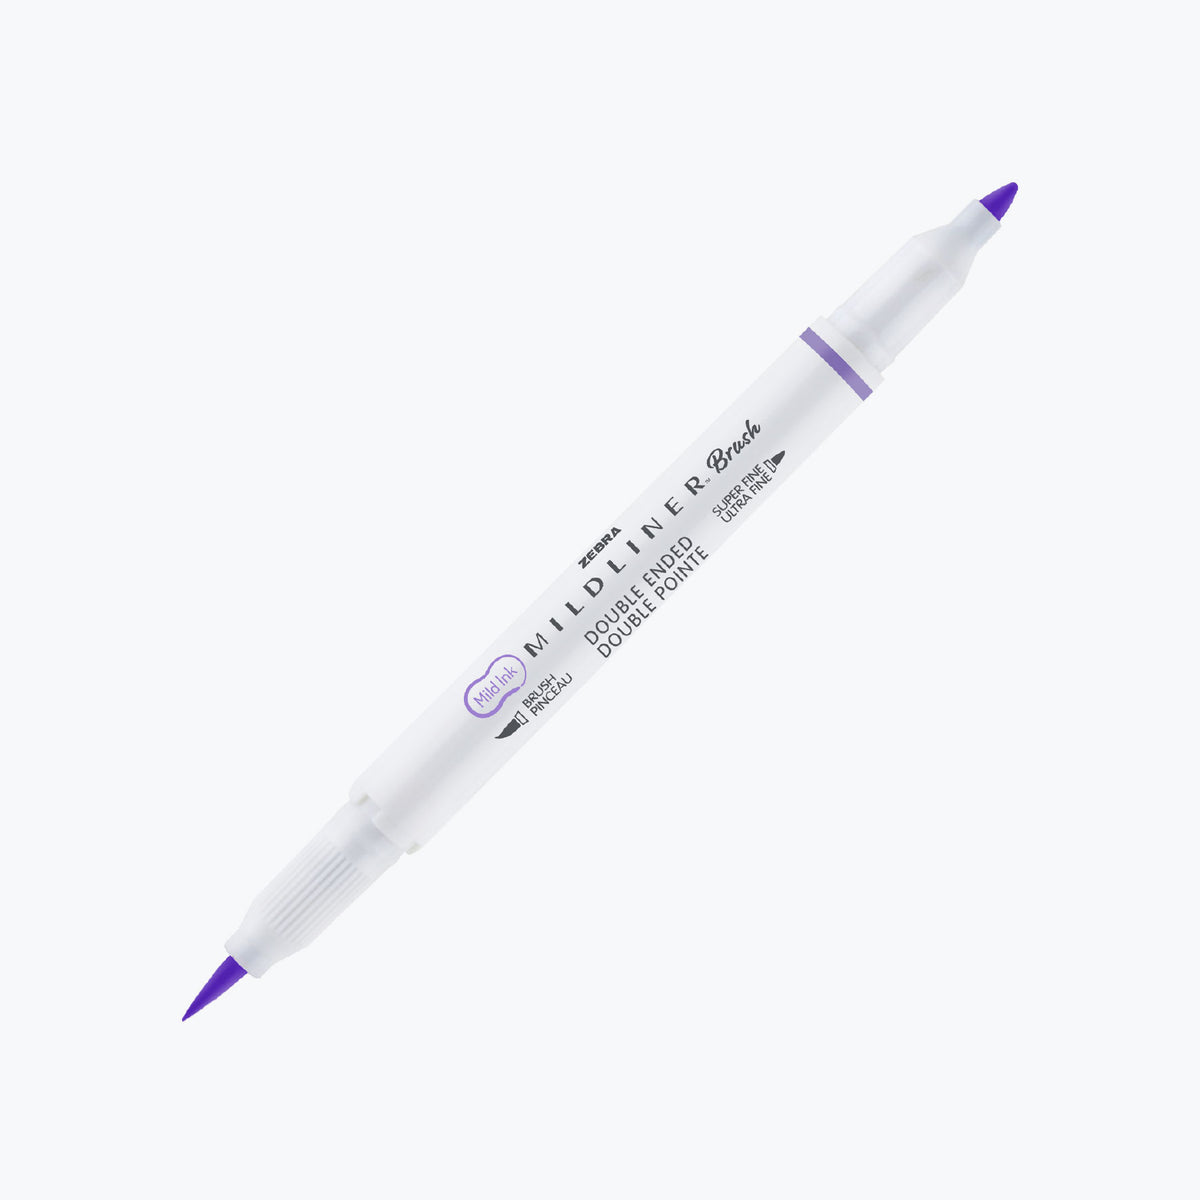 Zebra - Brush Pen - Mildliner Double Sided - Refresh Mild Set